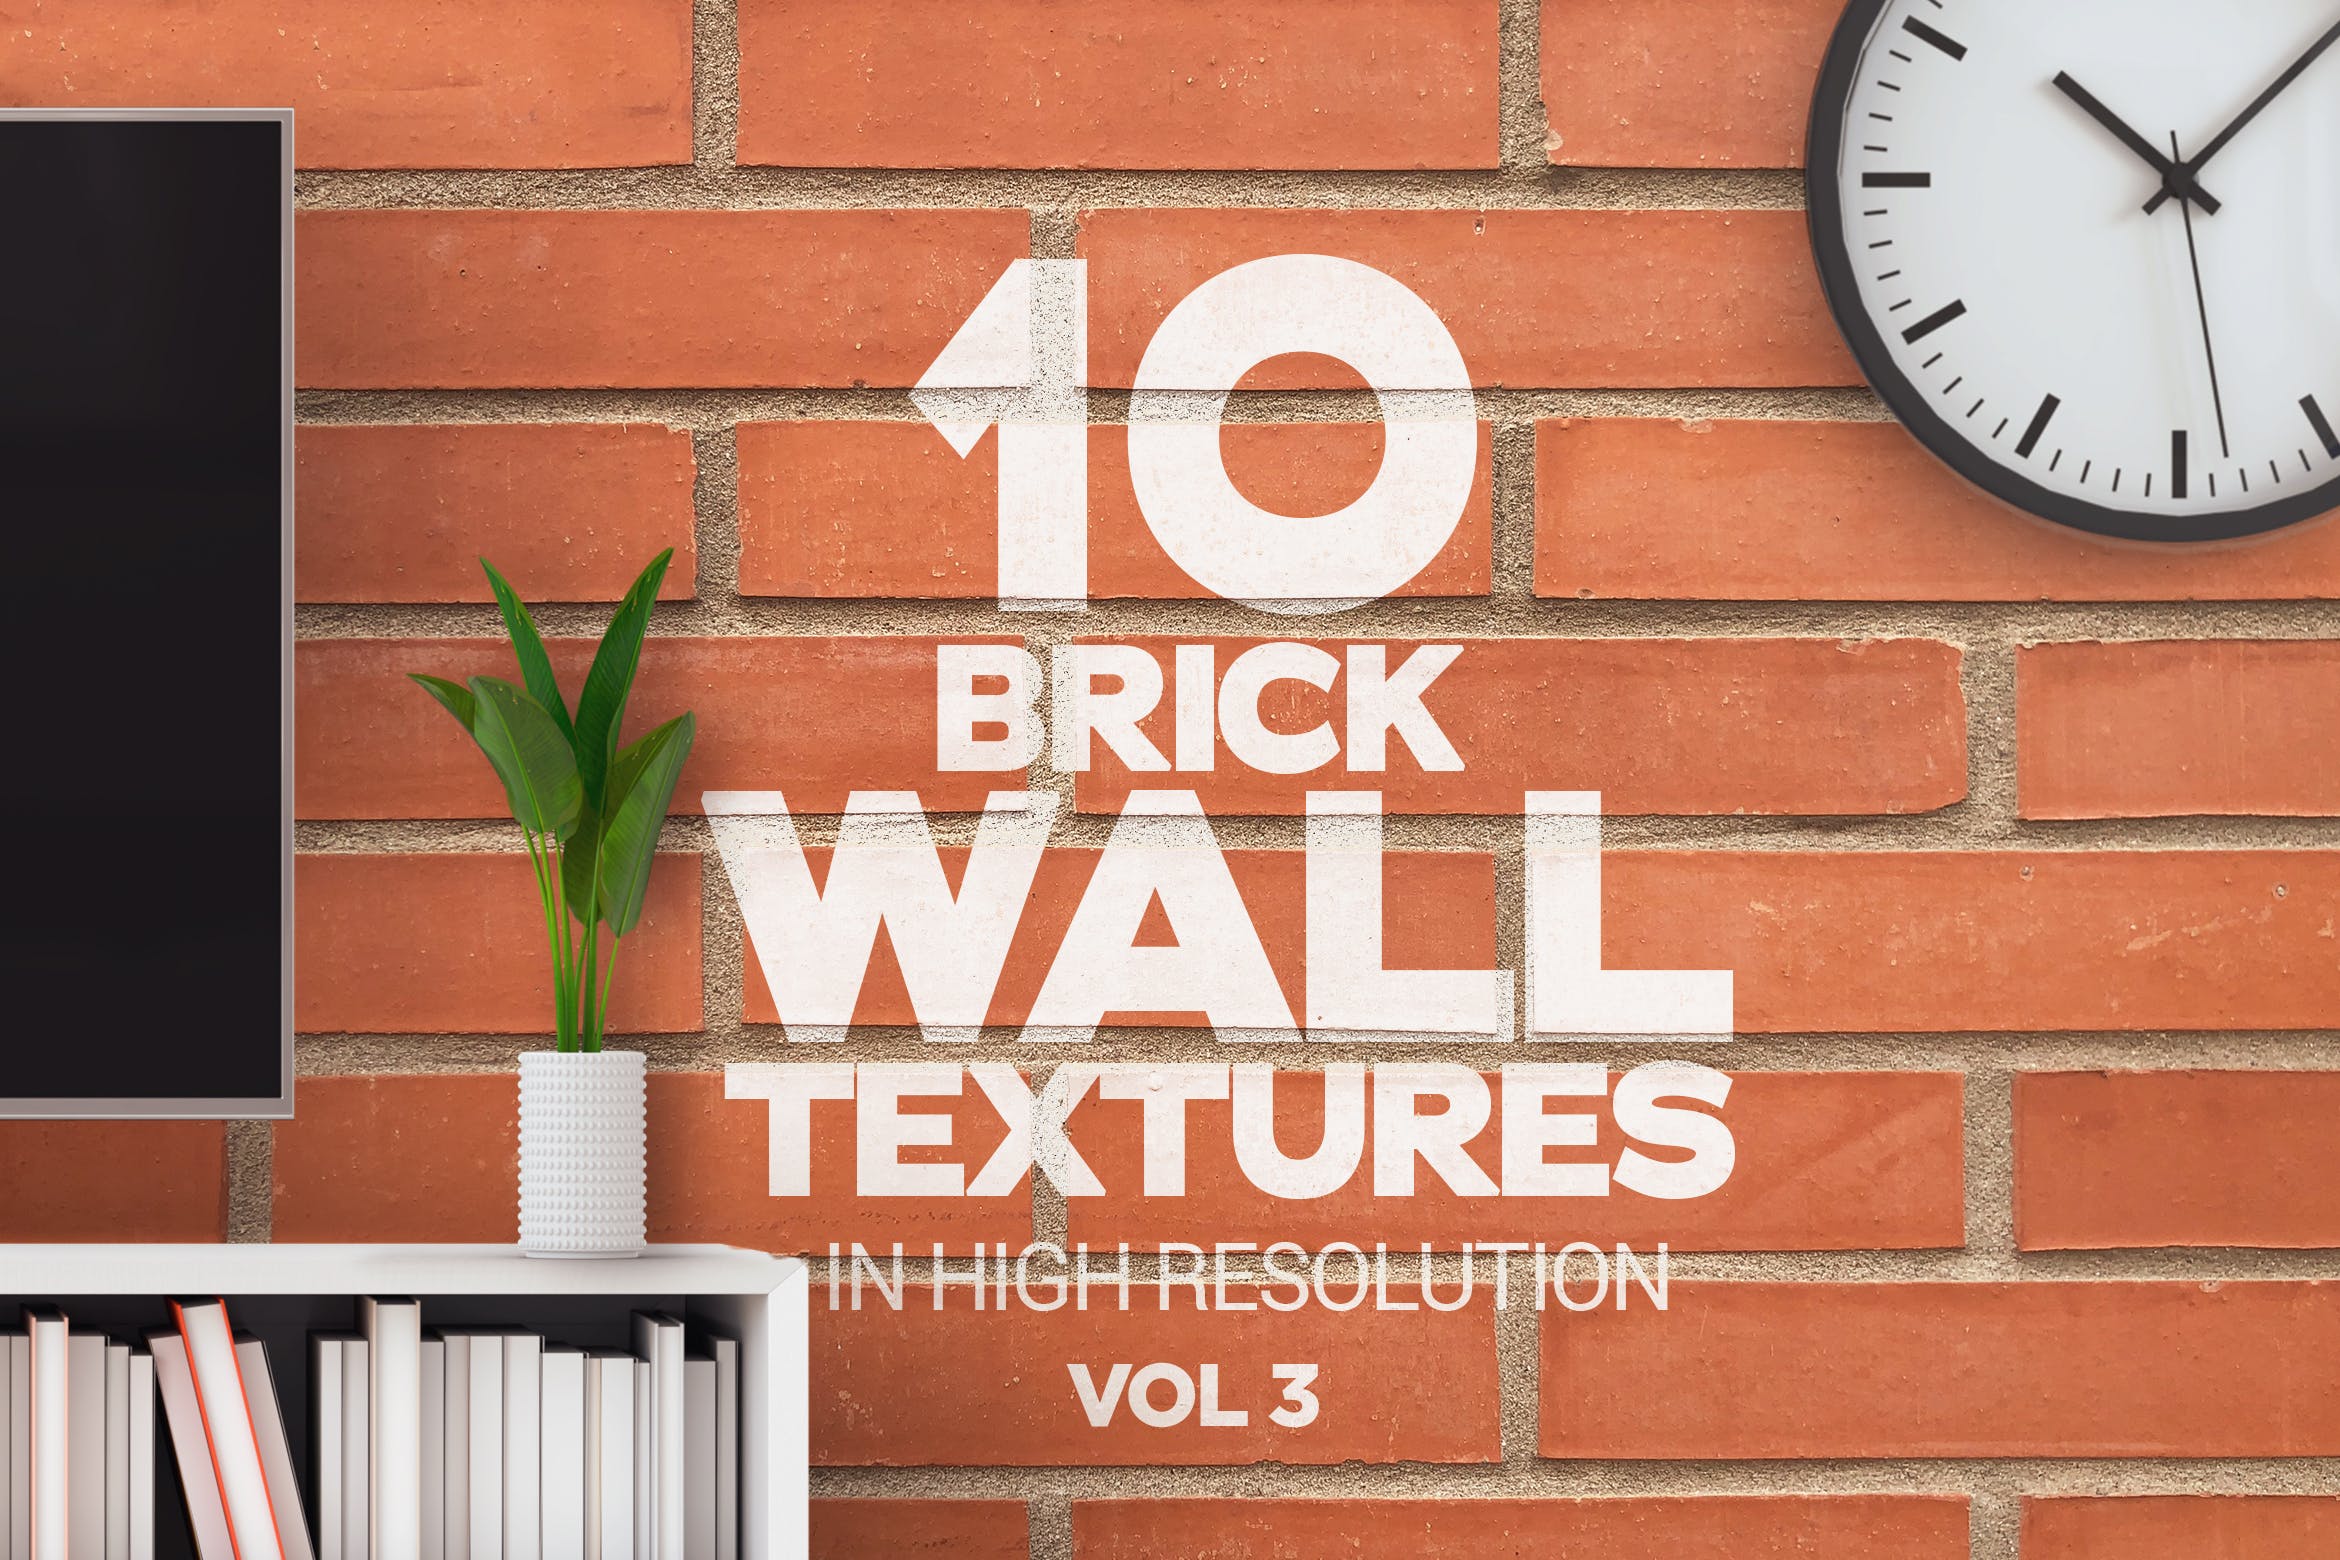 10张砖墙纹理高清第一素材精选背景素材v3 Brick Wall Textures x10 Vol 3插图